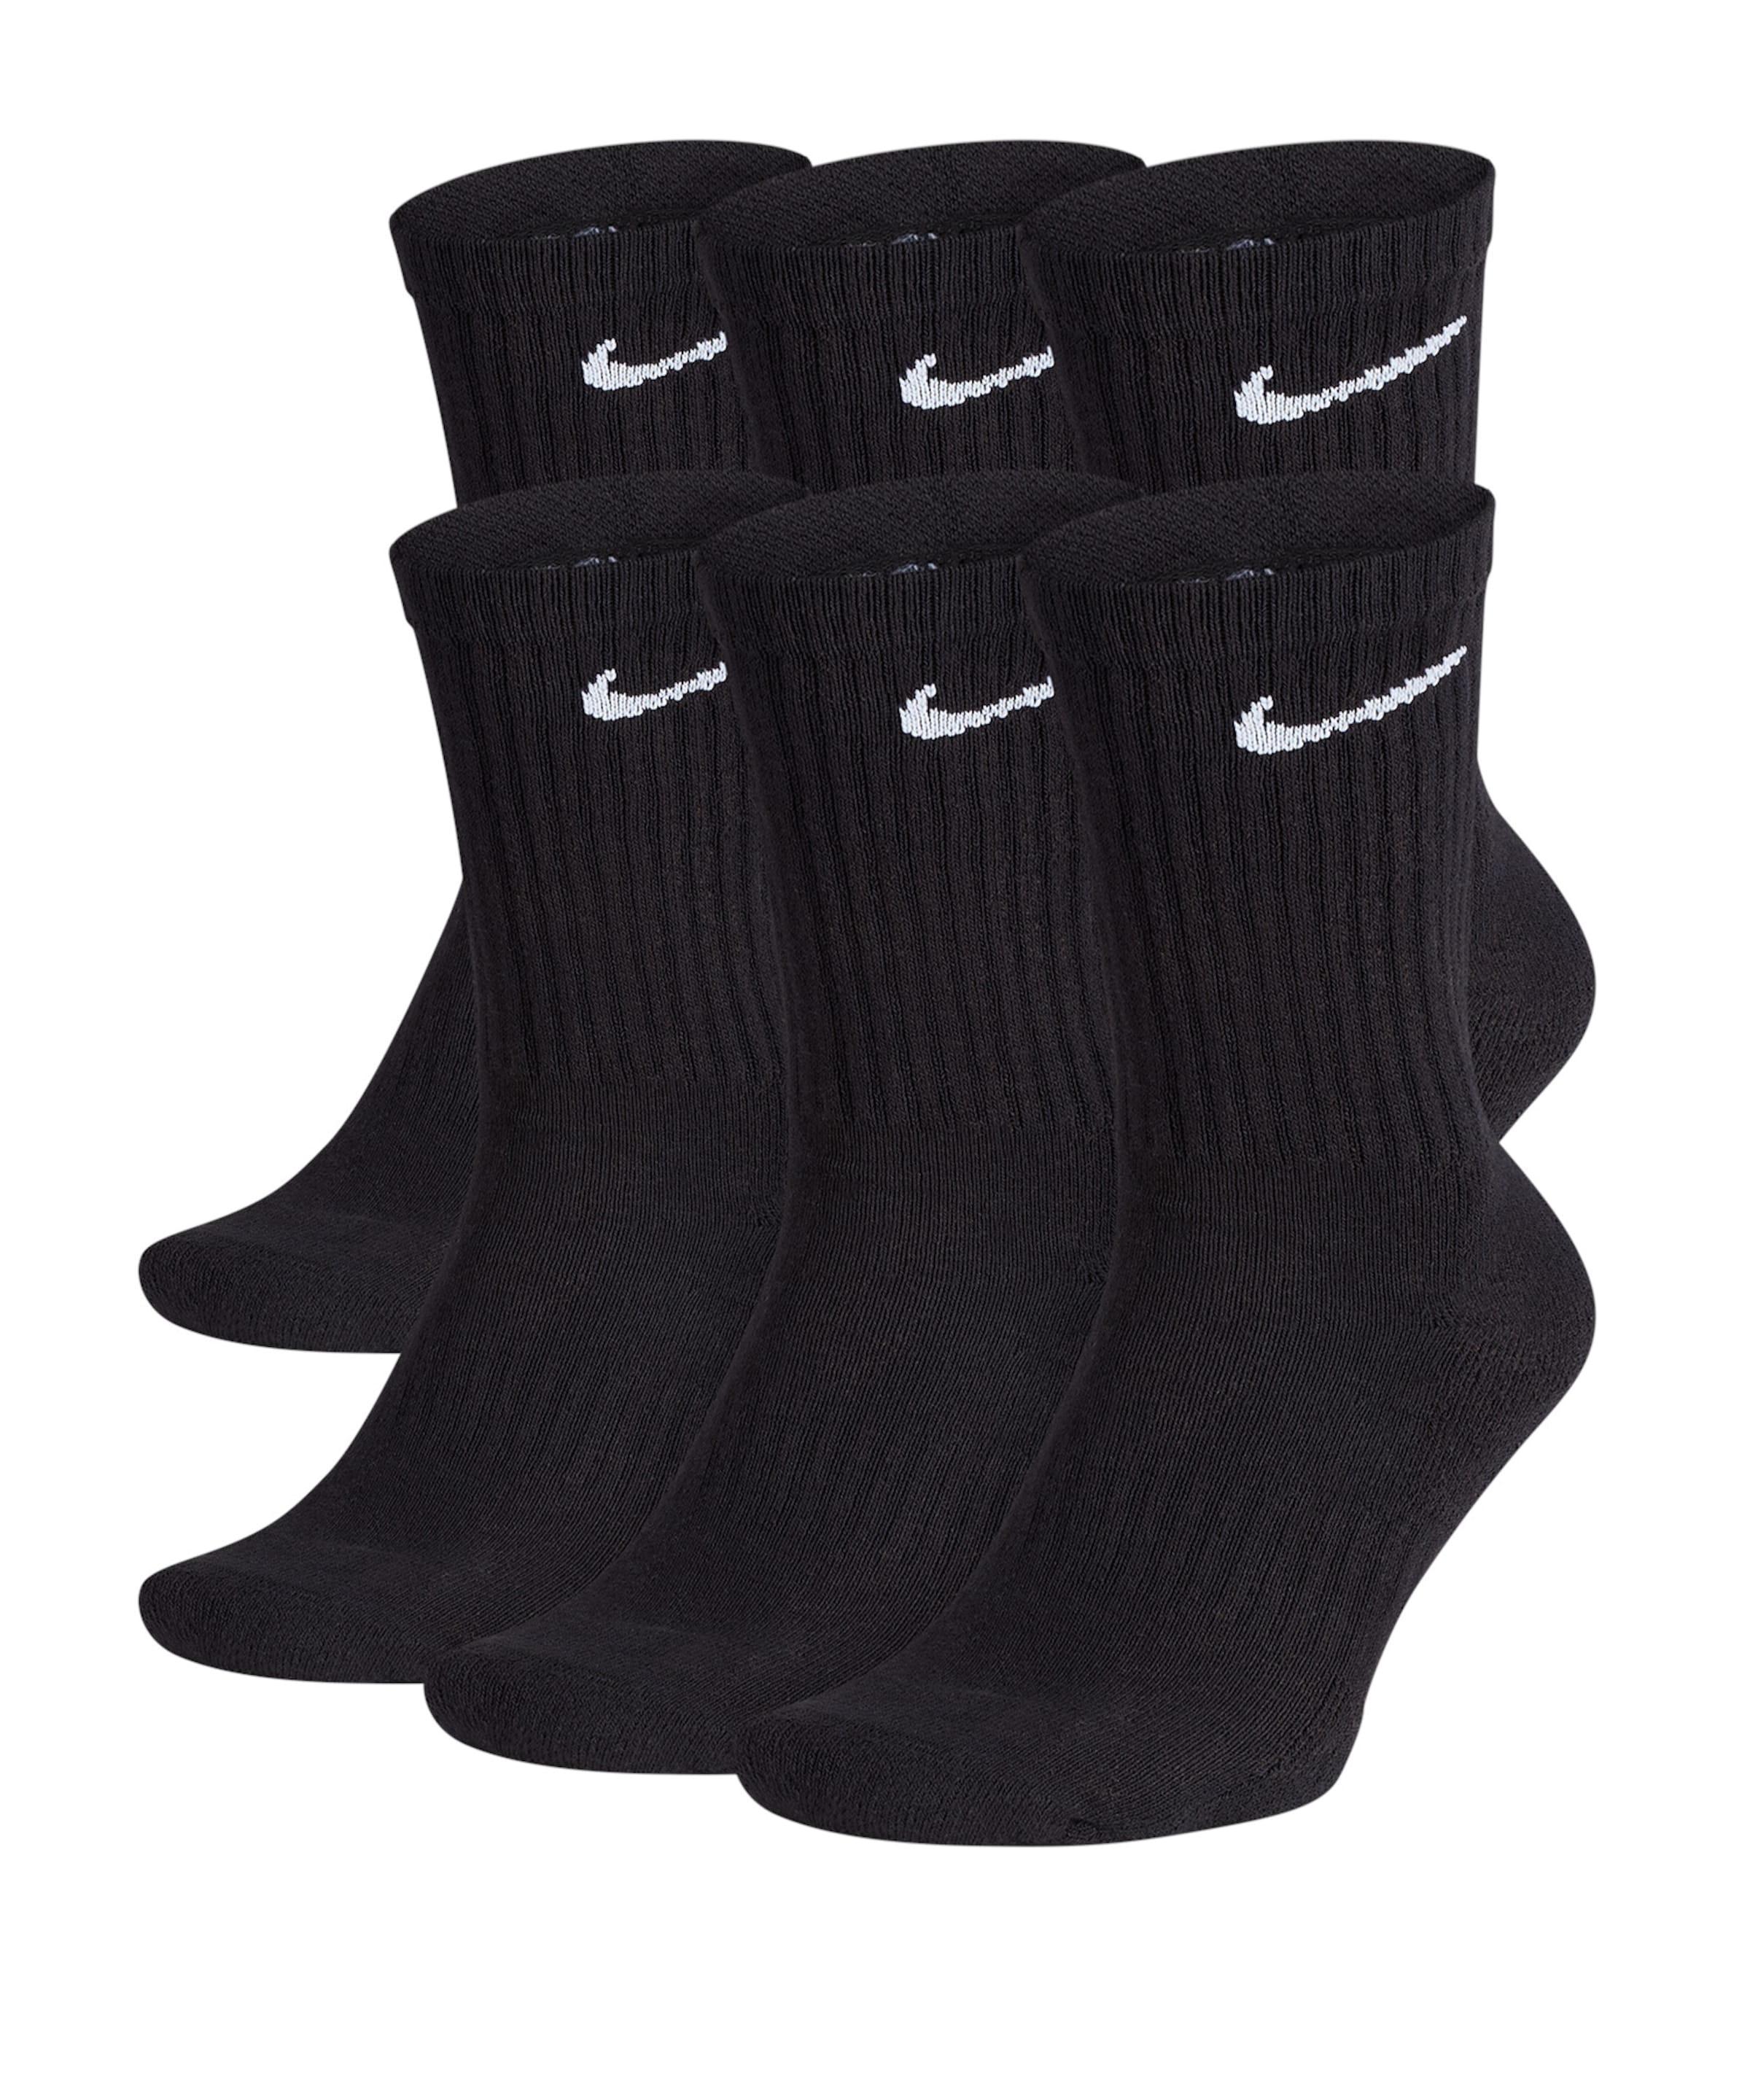 nike sports socks